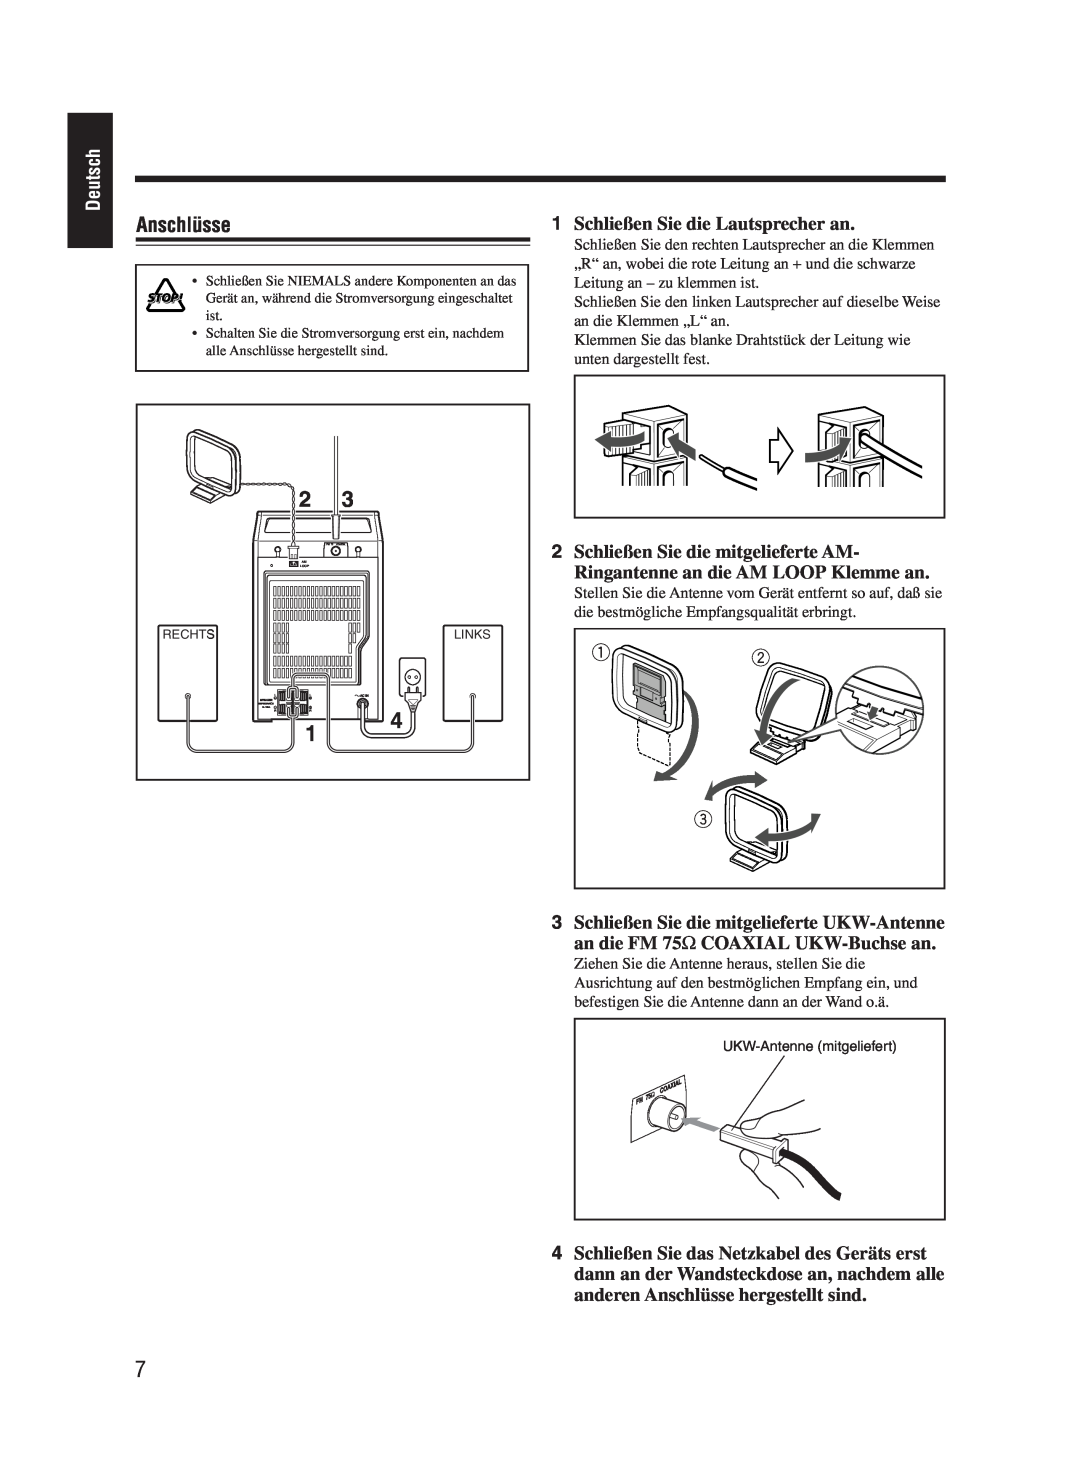 JVC UX-M55 manual Anschlüsse, Deutsch, 1Schließen Sie die Lautsprecher an, 3Schließen Sie die mitgelieferte UKW-Antenne 